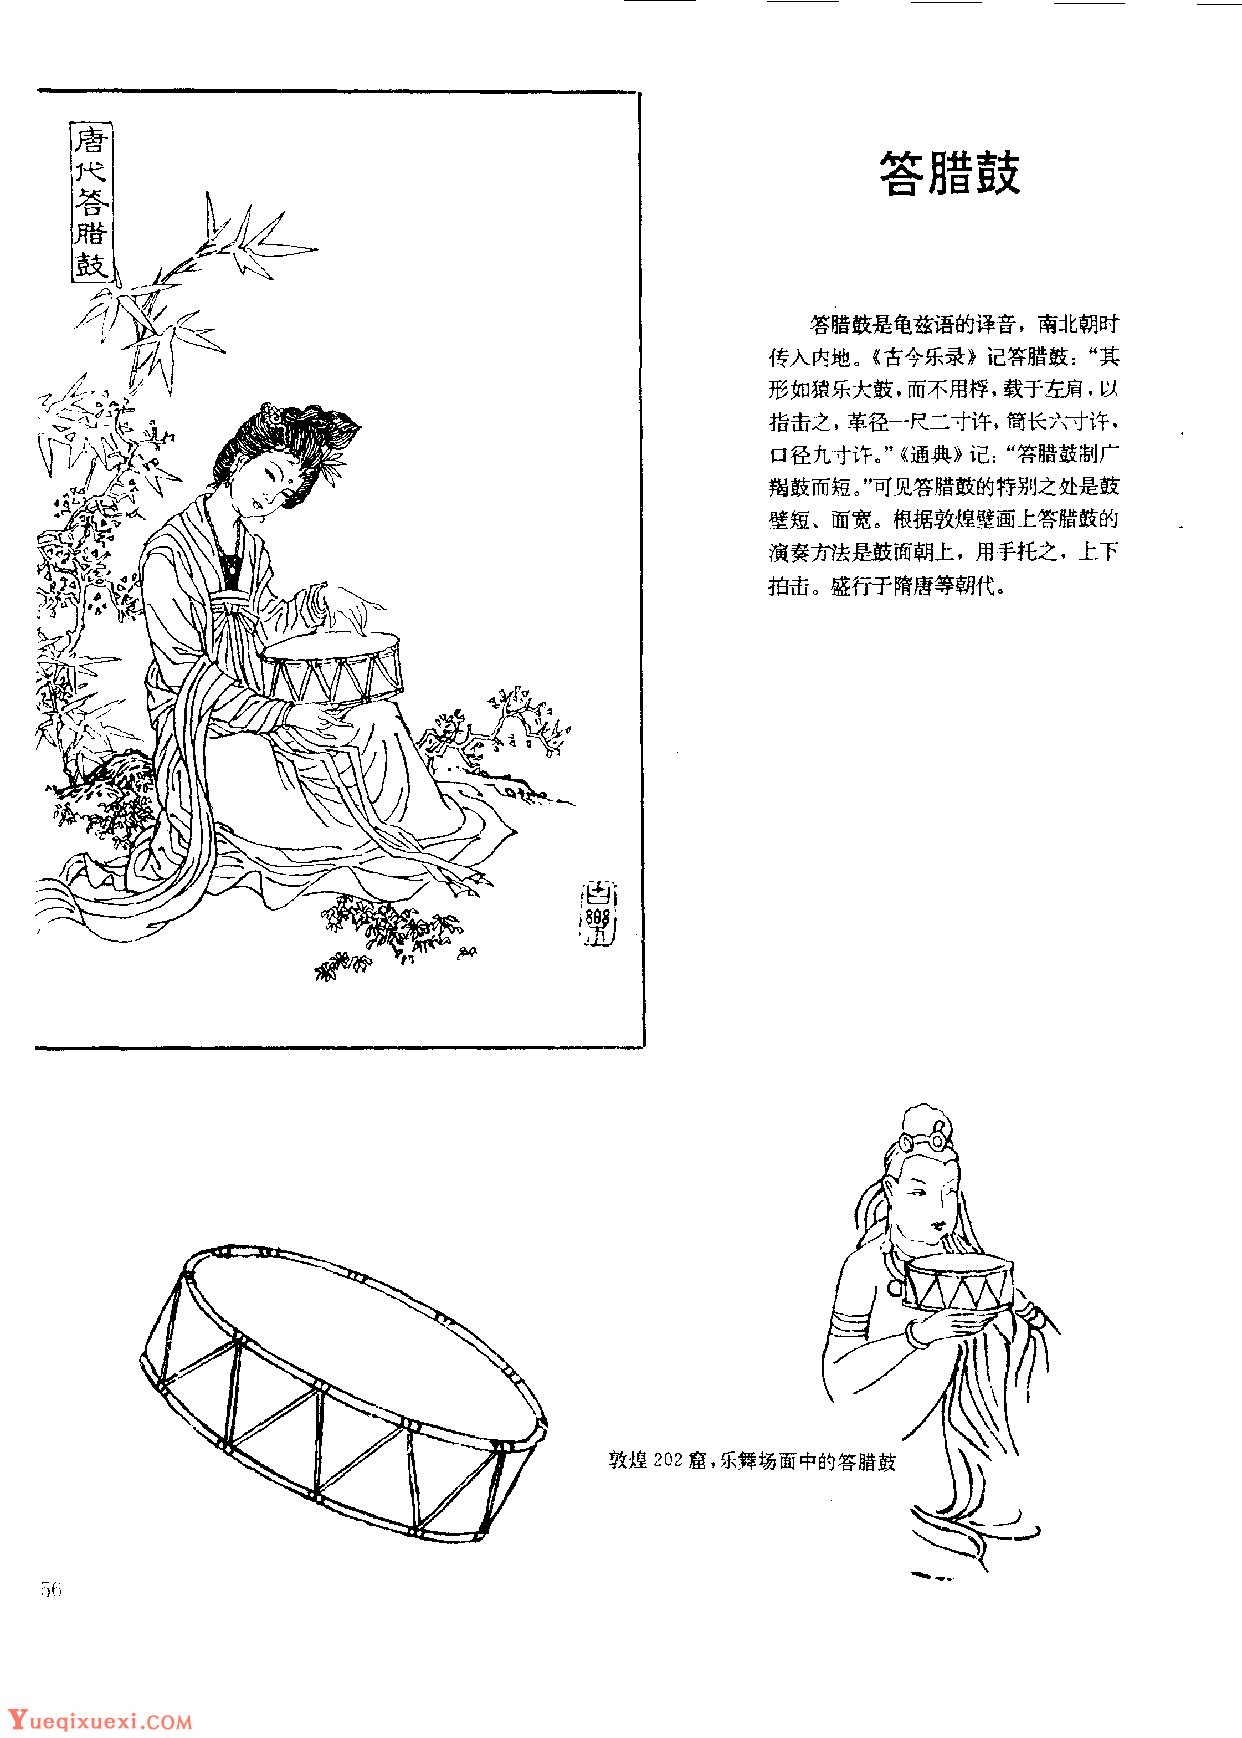 中国古代乐器《答腊鼓》